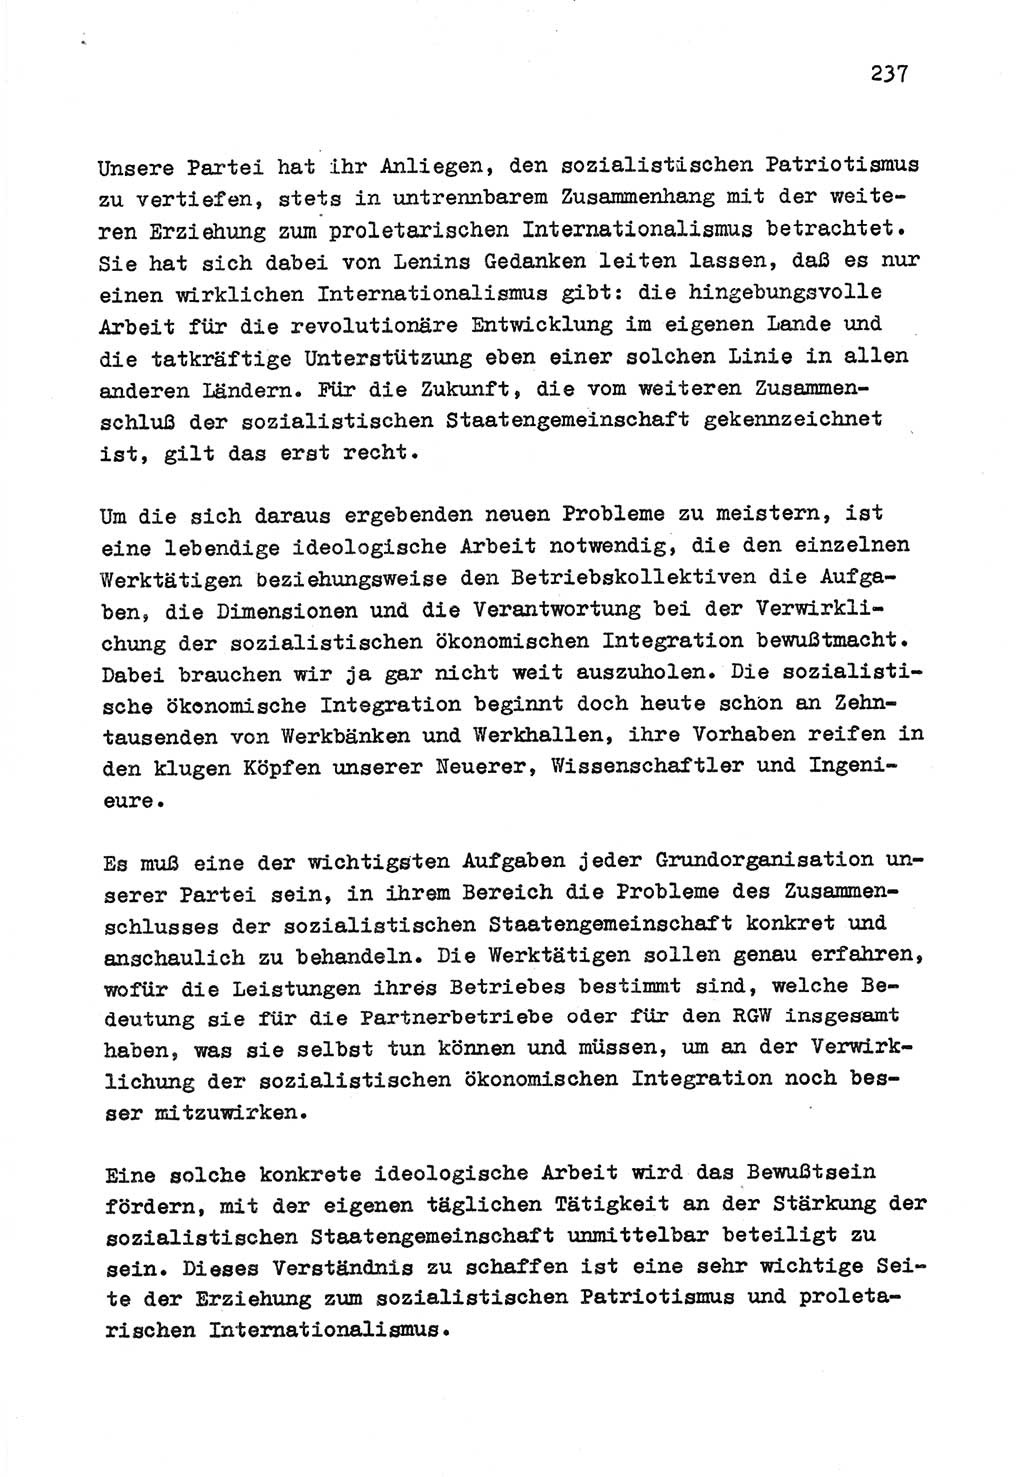 Zu Fragen der Parteiarbeit [Sozialistische Einheitspartei Deutschlands (SED) Deutsche Demokratische Republik (DDR)] 1979, Seite 237 (Fr. PA SED DDR 1979, S. 237)